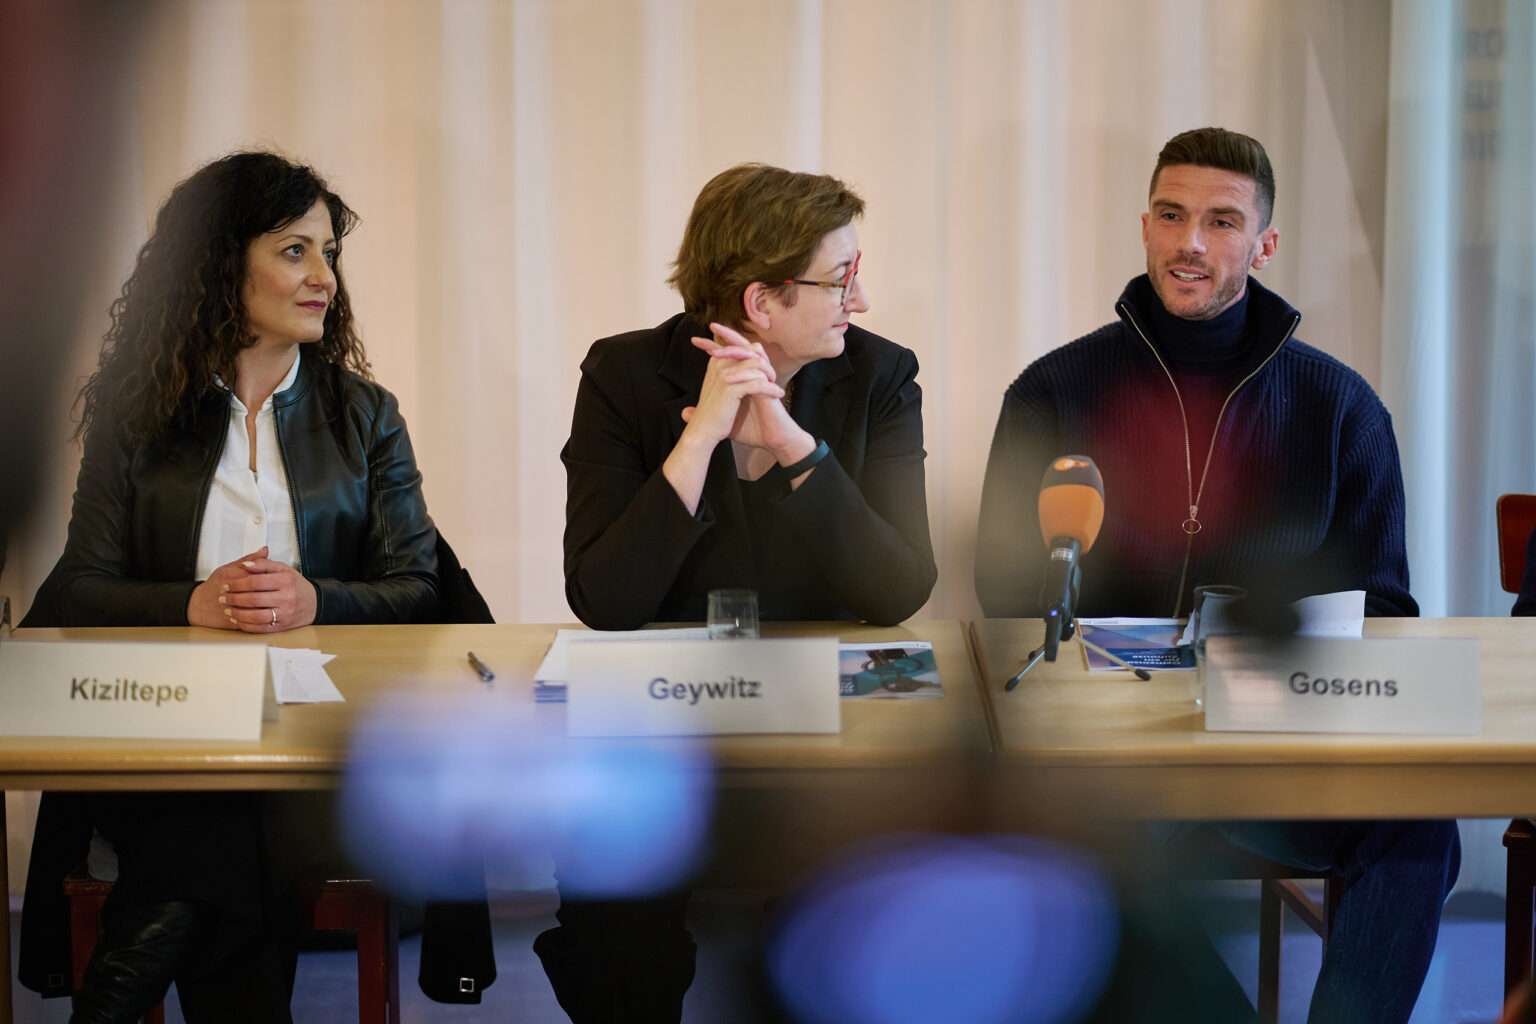 Der Fußballspieler Robin Gosens sitzt gemeinsam mit zwei weiteren Frauen an einem Tisch bei der Pressekonferenz. Er ist gerade am sprechen. Die anderen beiden Frauen links von ihm schauen ihn an und hören gespannt zu.